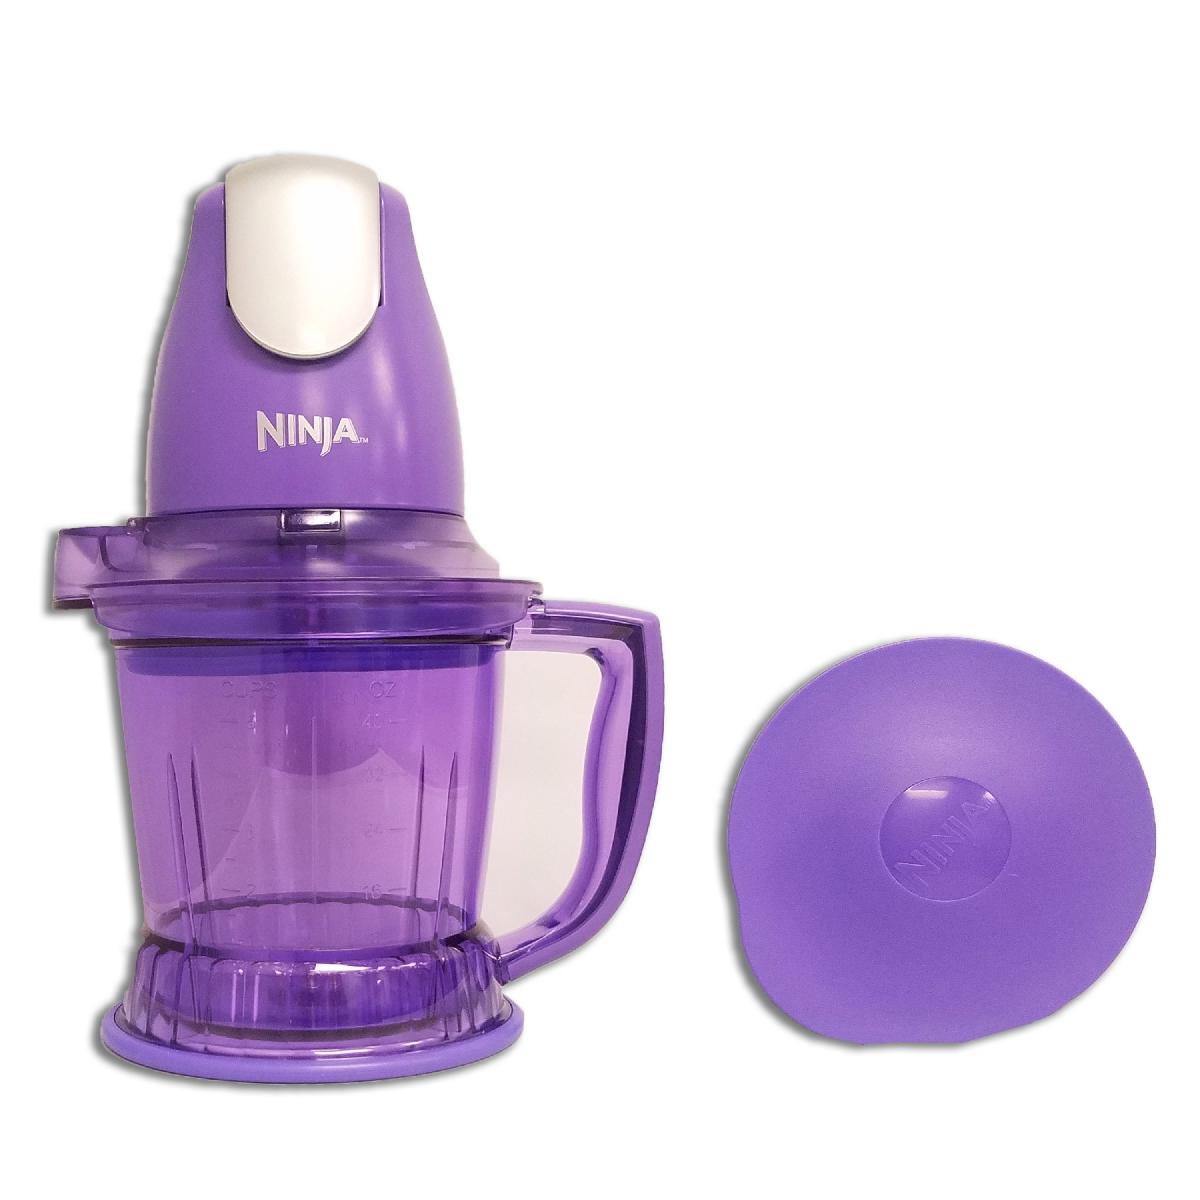 NINJA Storm 450W Blender/Food Processor Refurbished Purple